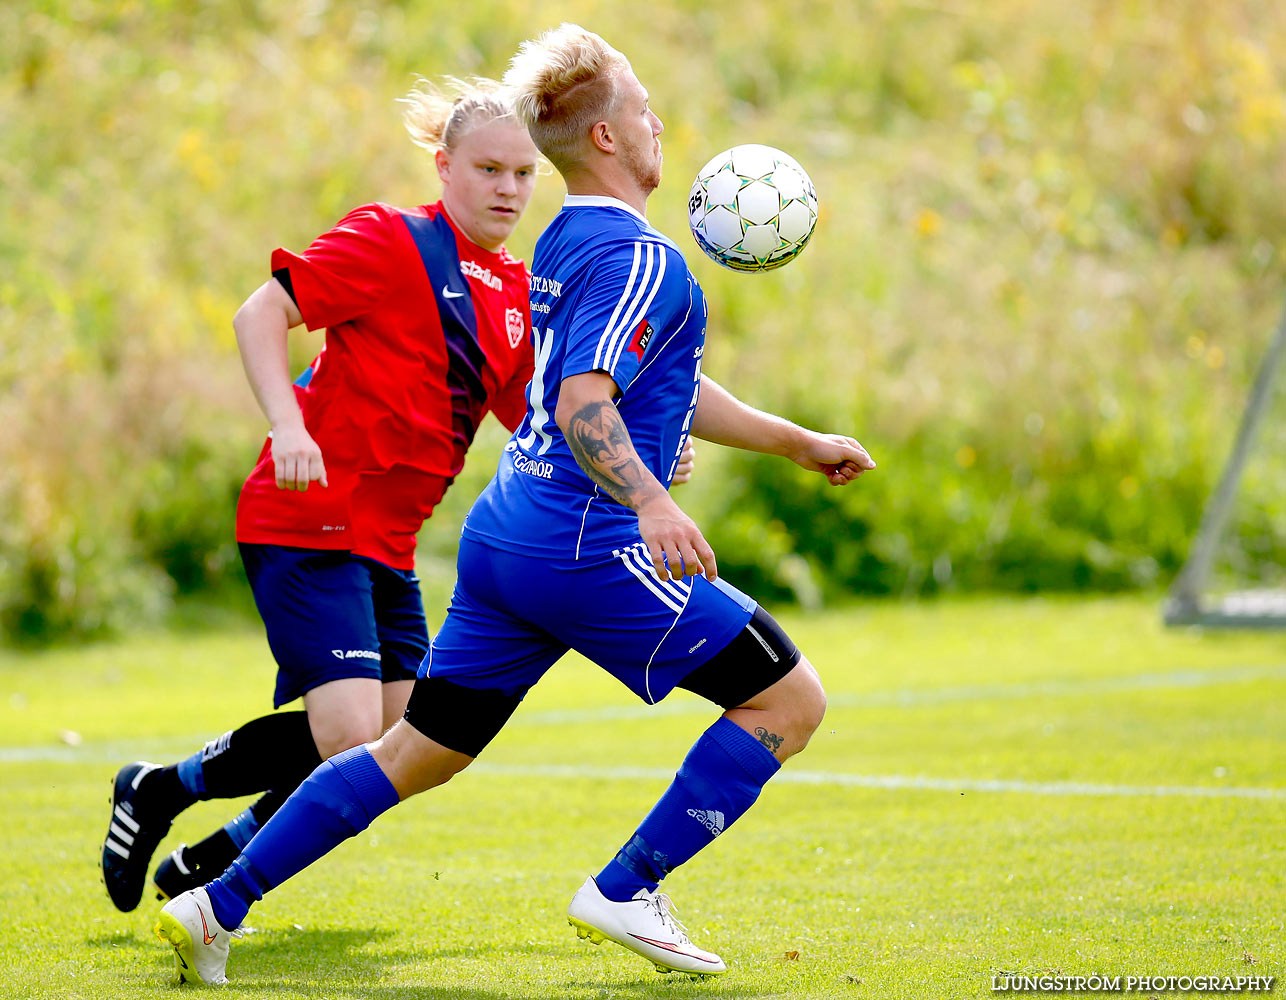 Lerdala IF-Korsberga IF 1-7,herr,Lerdala IP,Lerdala,Sverige,Fotboll,,2015,123053